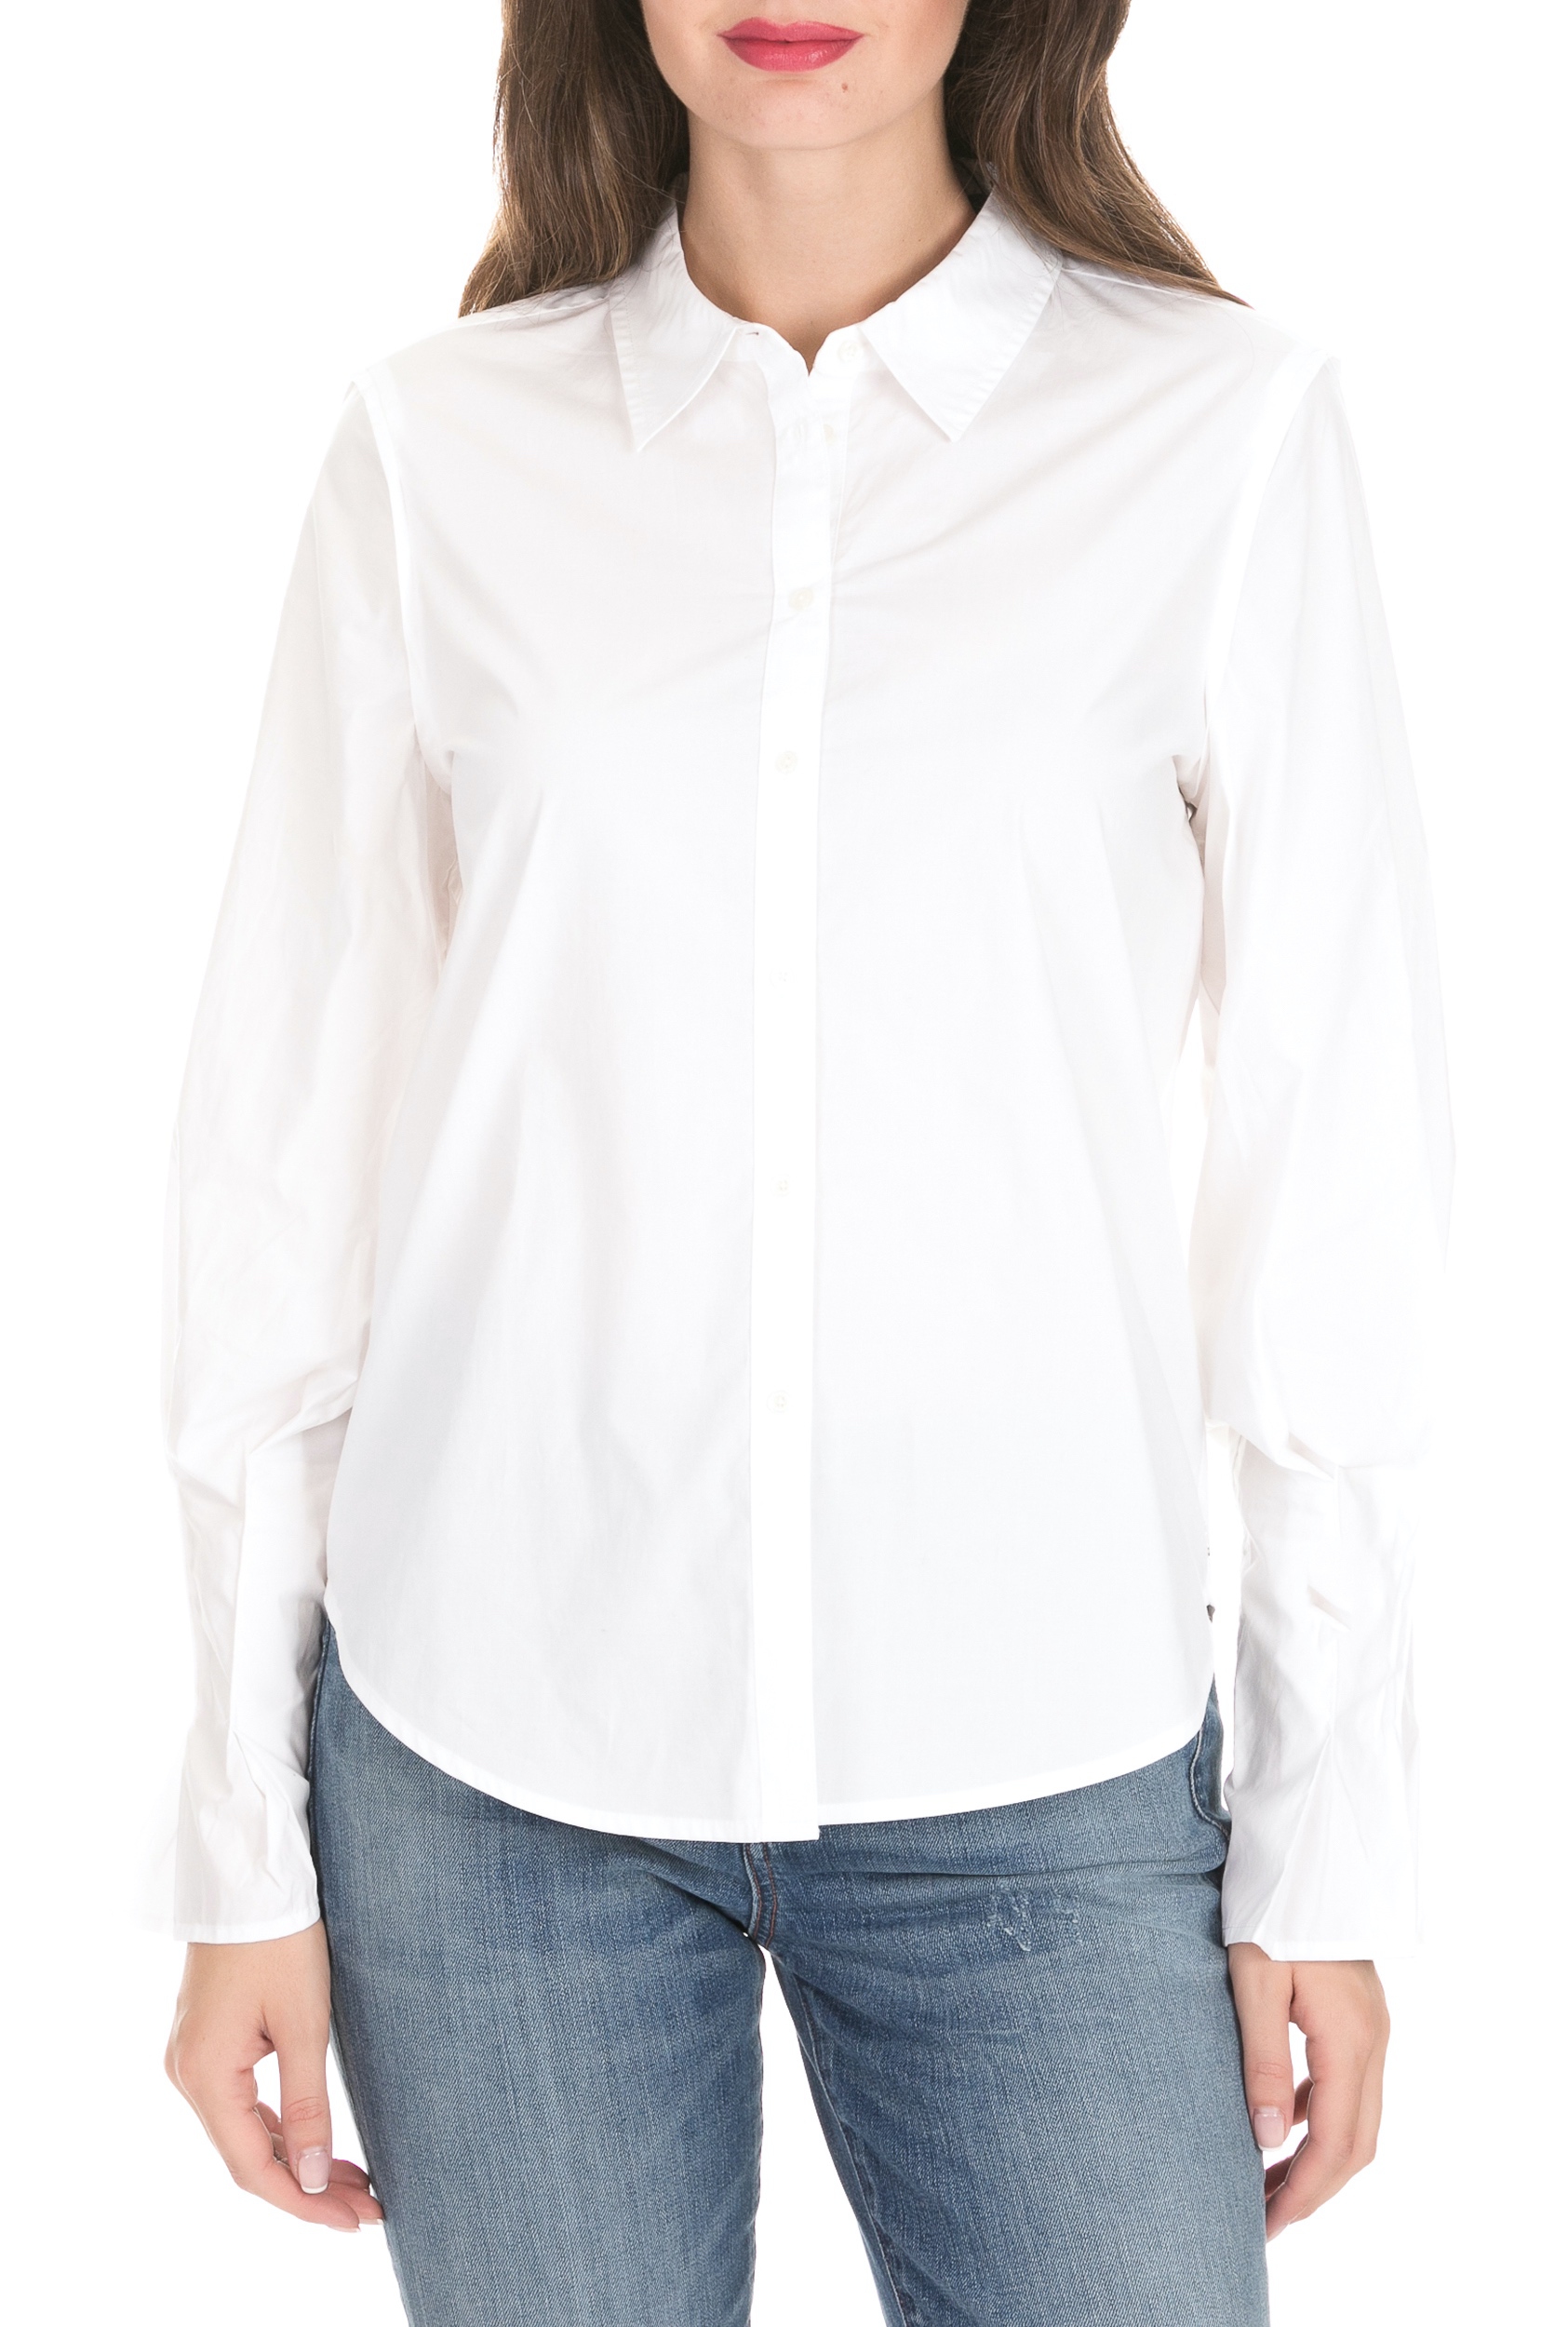 SCOTCH & SODA SCOTCH & SODA - Γυναικείο πουκάμισο SCOTCH & SODA λευκό